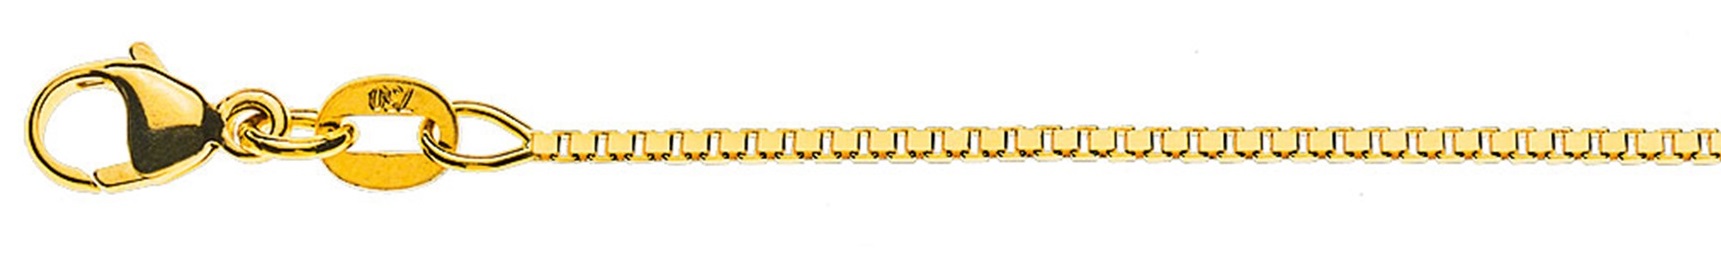 AURONOS Prestige Collier en or jaune 18K vénitien diamanté 38cm 1.1mm